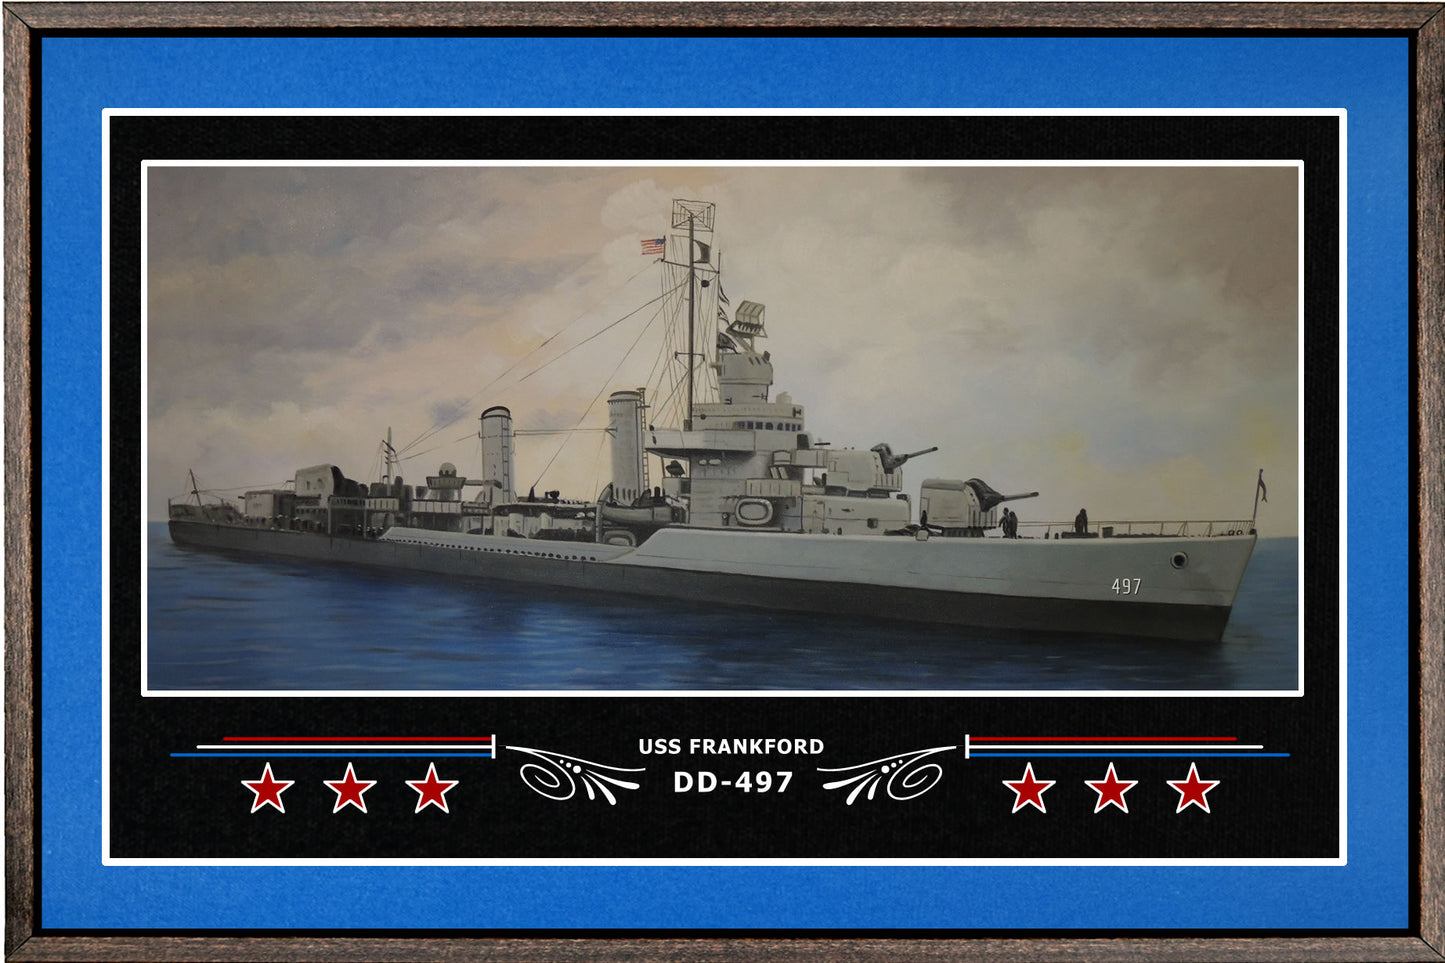 USS FRANKFORD DD 497 BOX FRAMED CANVAS ART BLUE